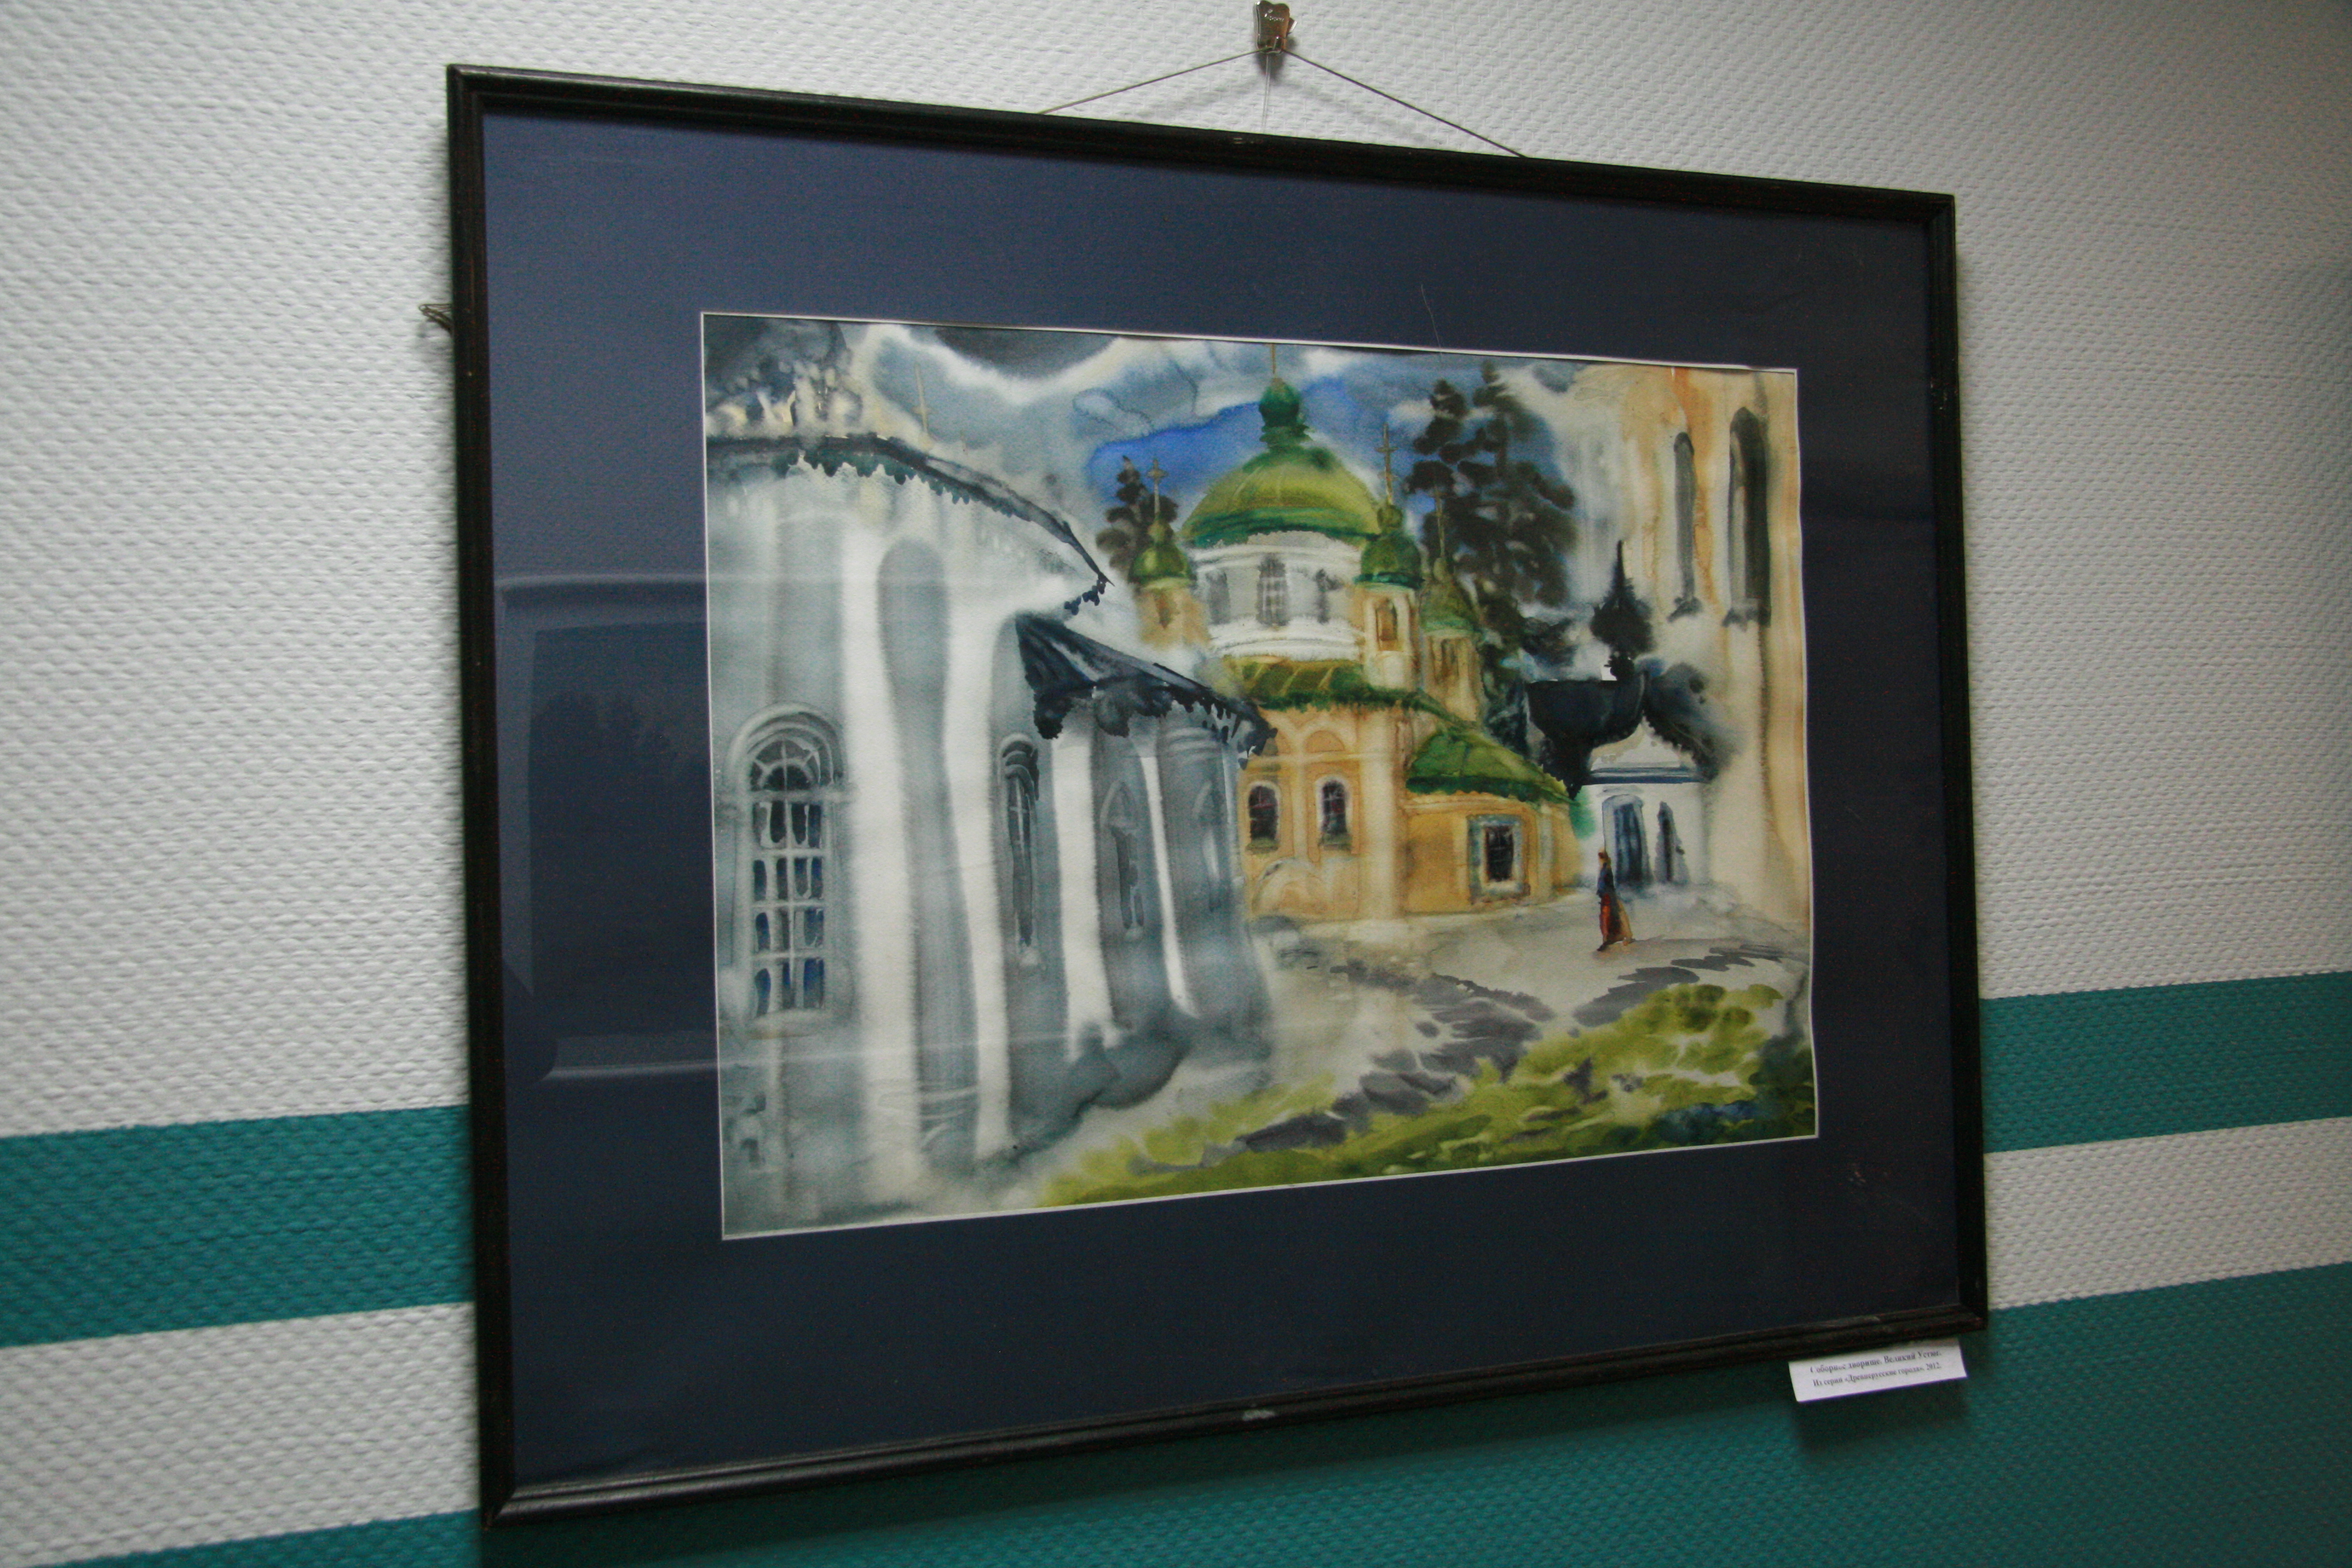 Exhibition of watercolors by Olga Lutsko